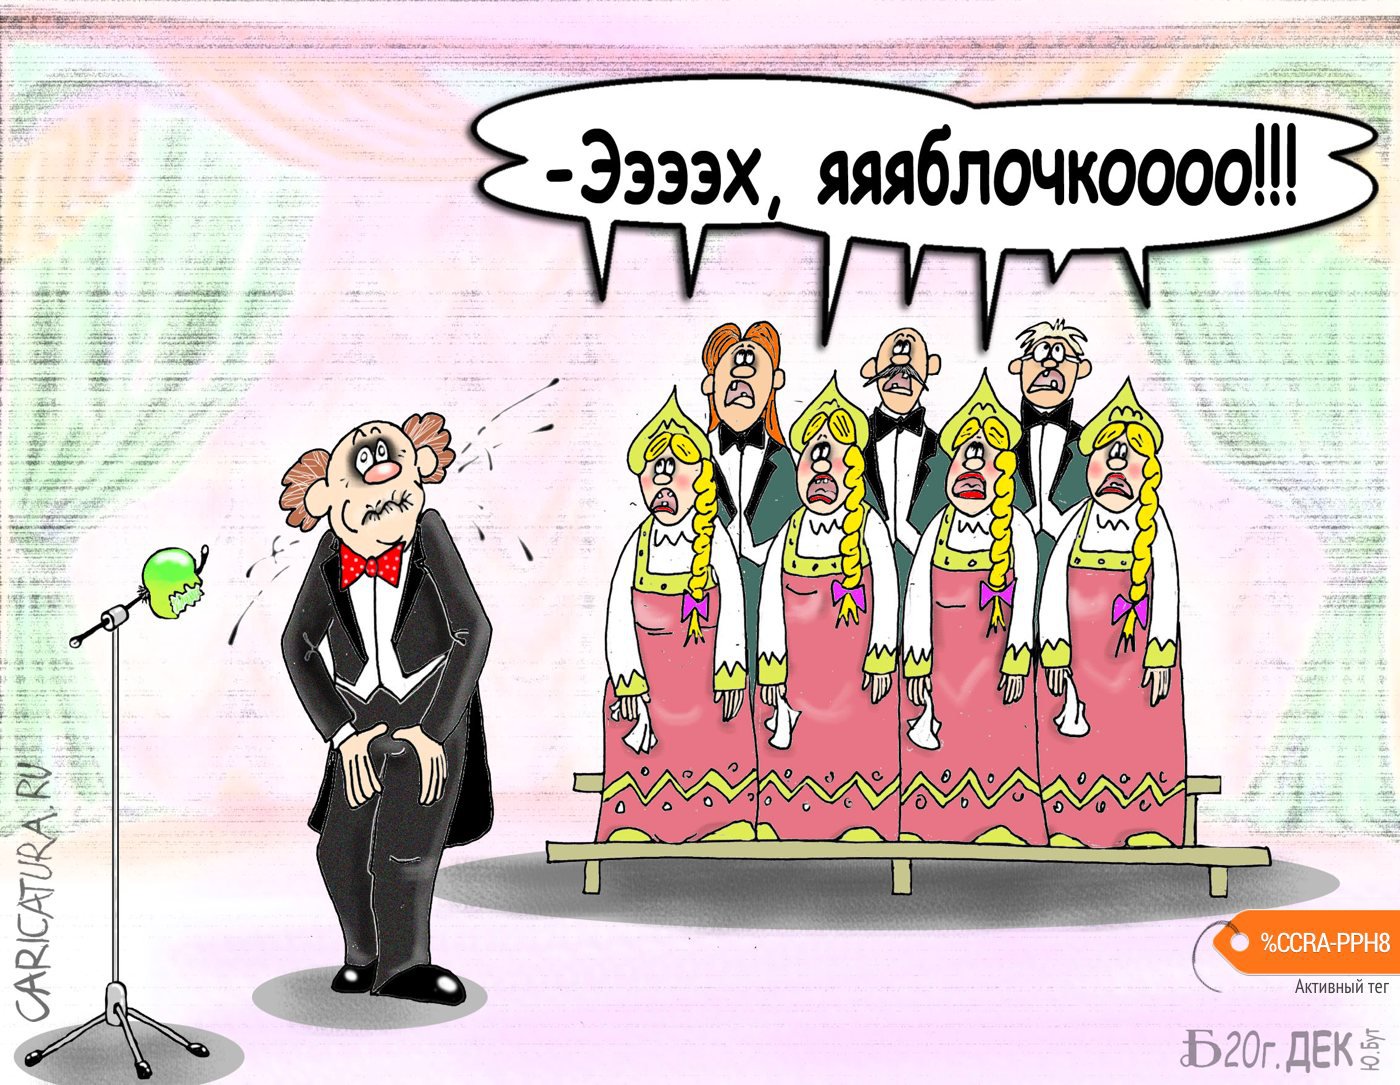 Карикатура "Проэхяблочко", Борис Демин